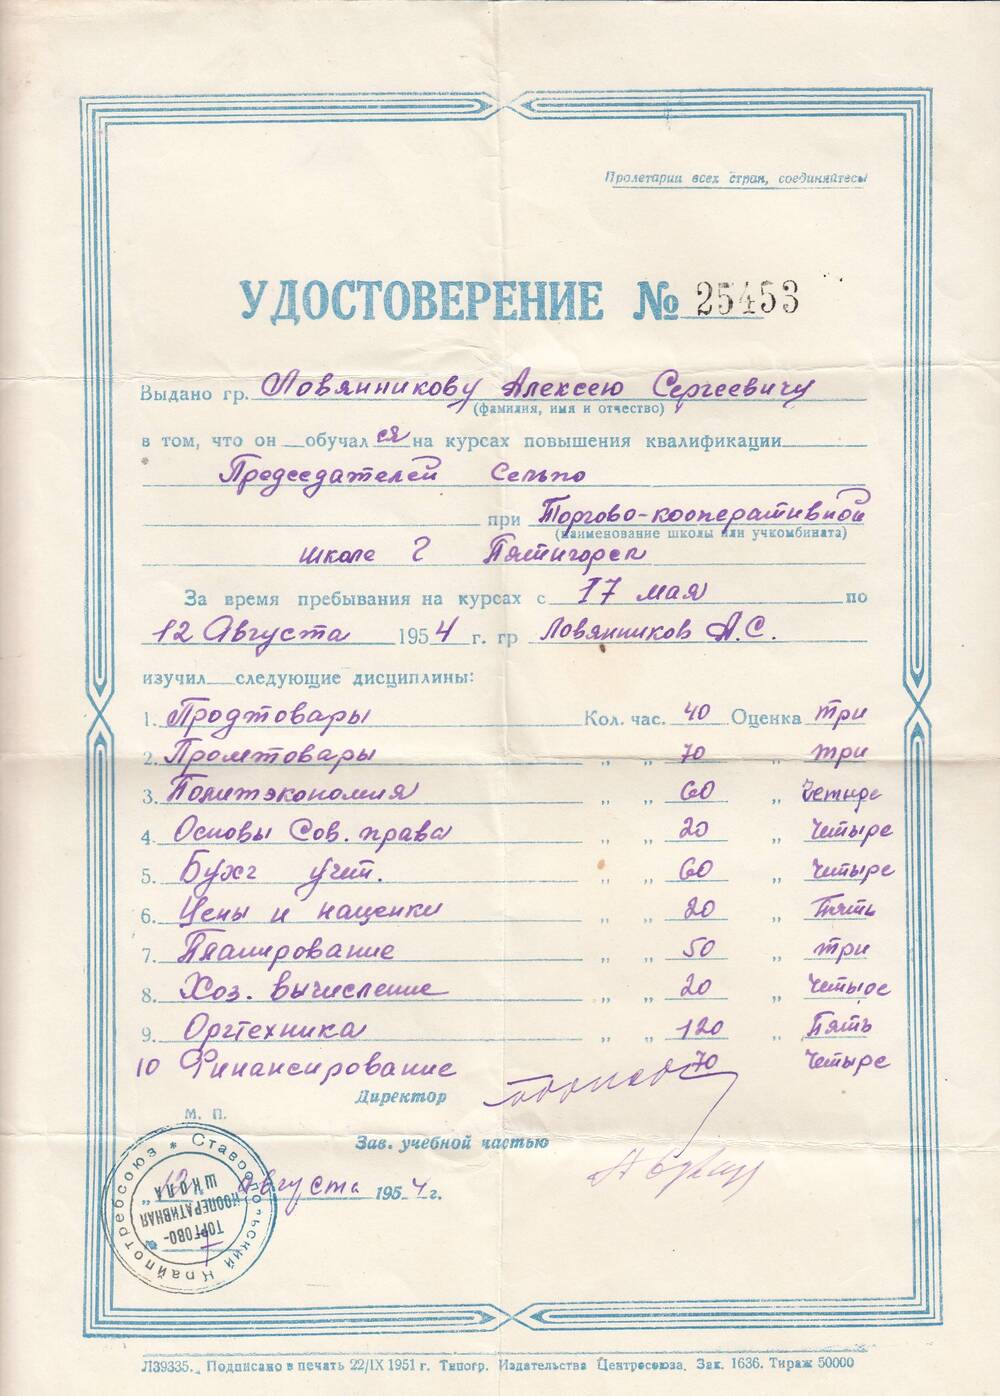 Удостоверение №25453 Ловянникова Алексея Сергеевича